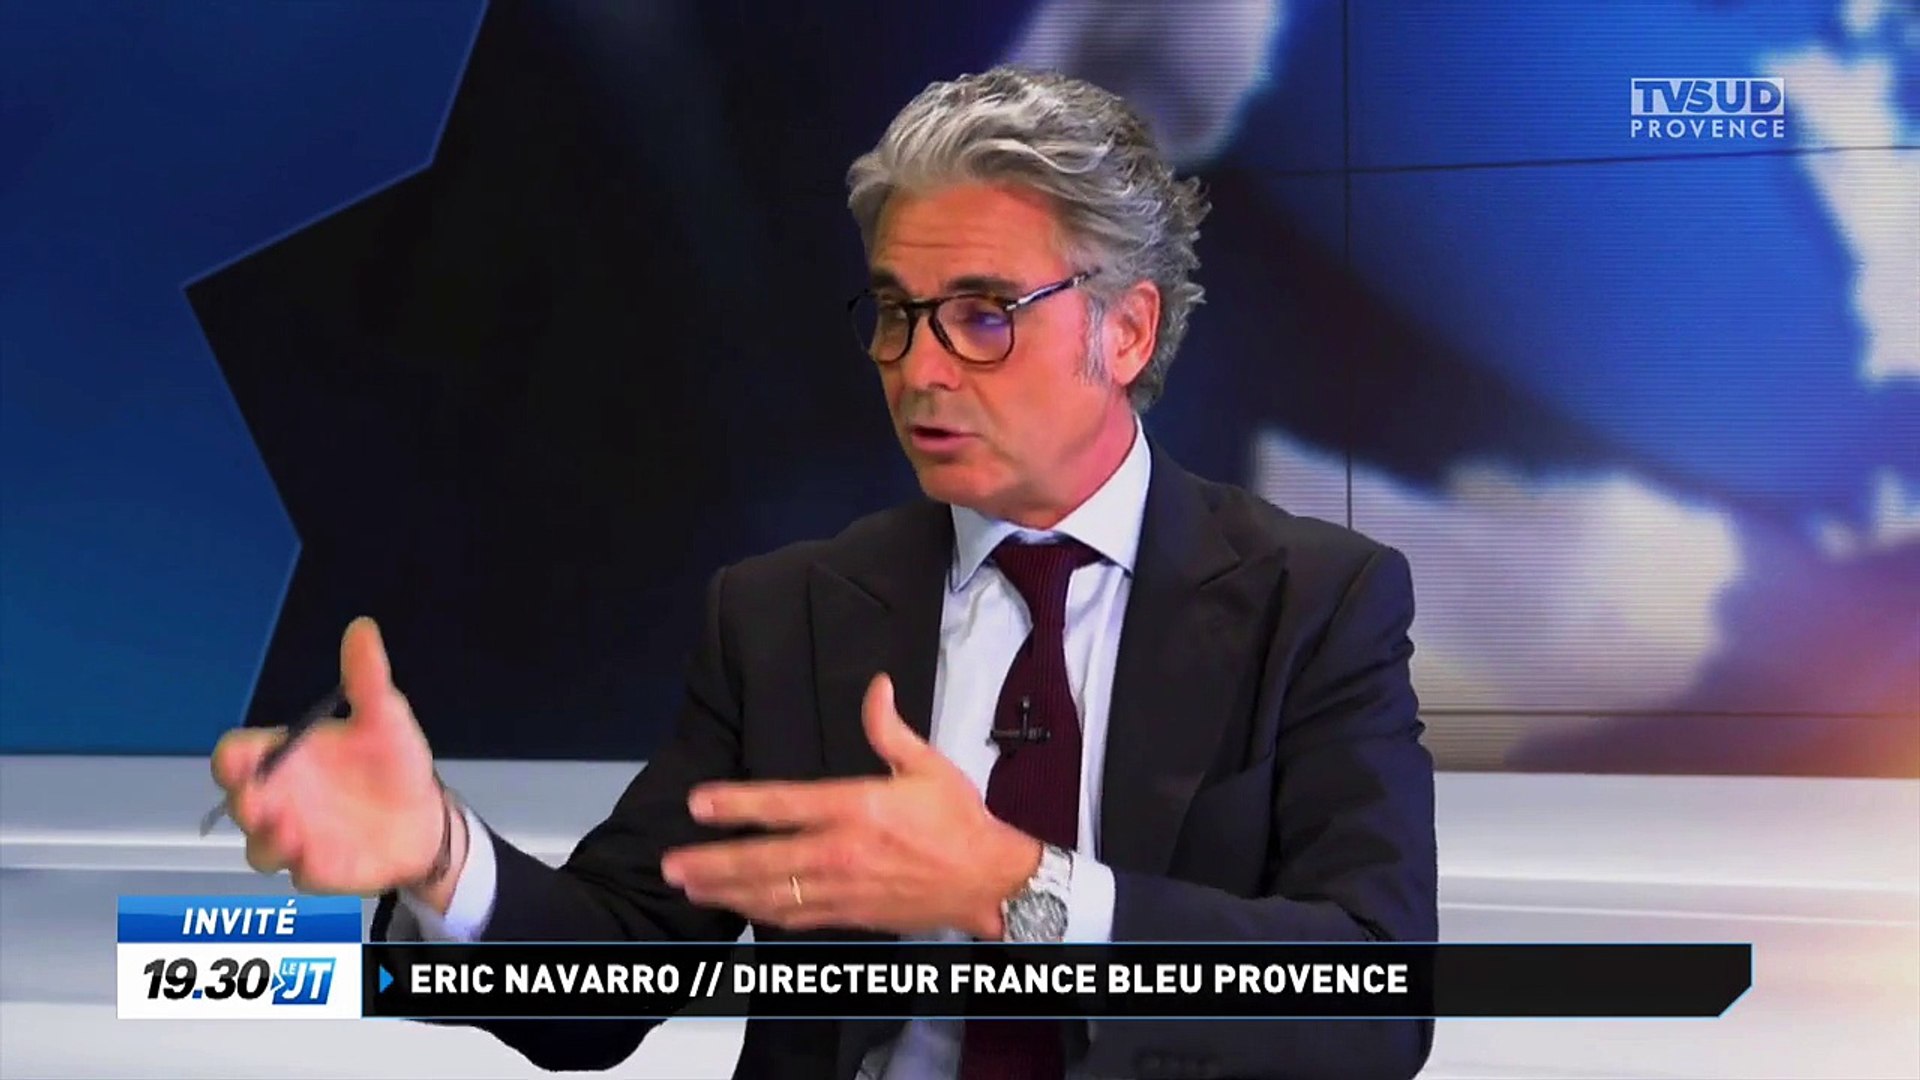 Eric Navarro, directeur de France Bleu Provence, invité de TV SUD Provence  - Vidéo Dailymotion